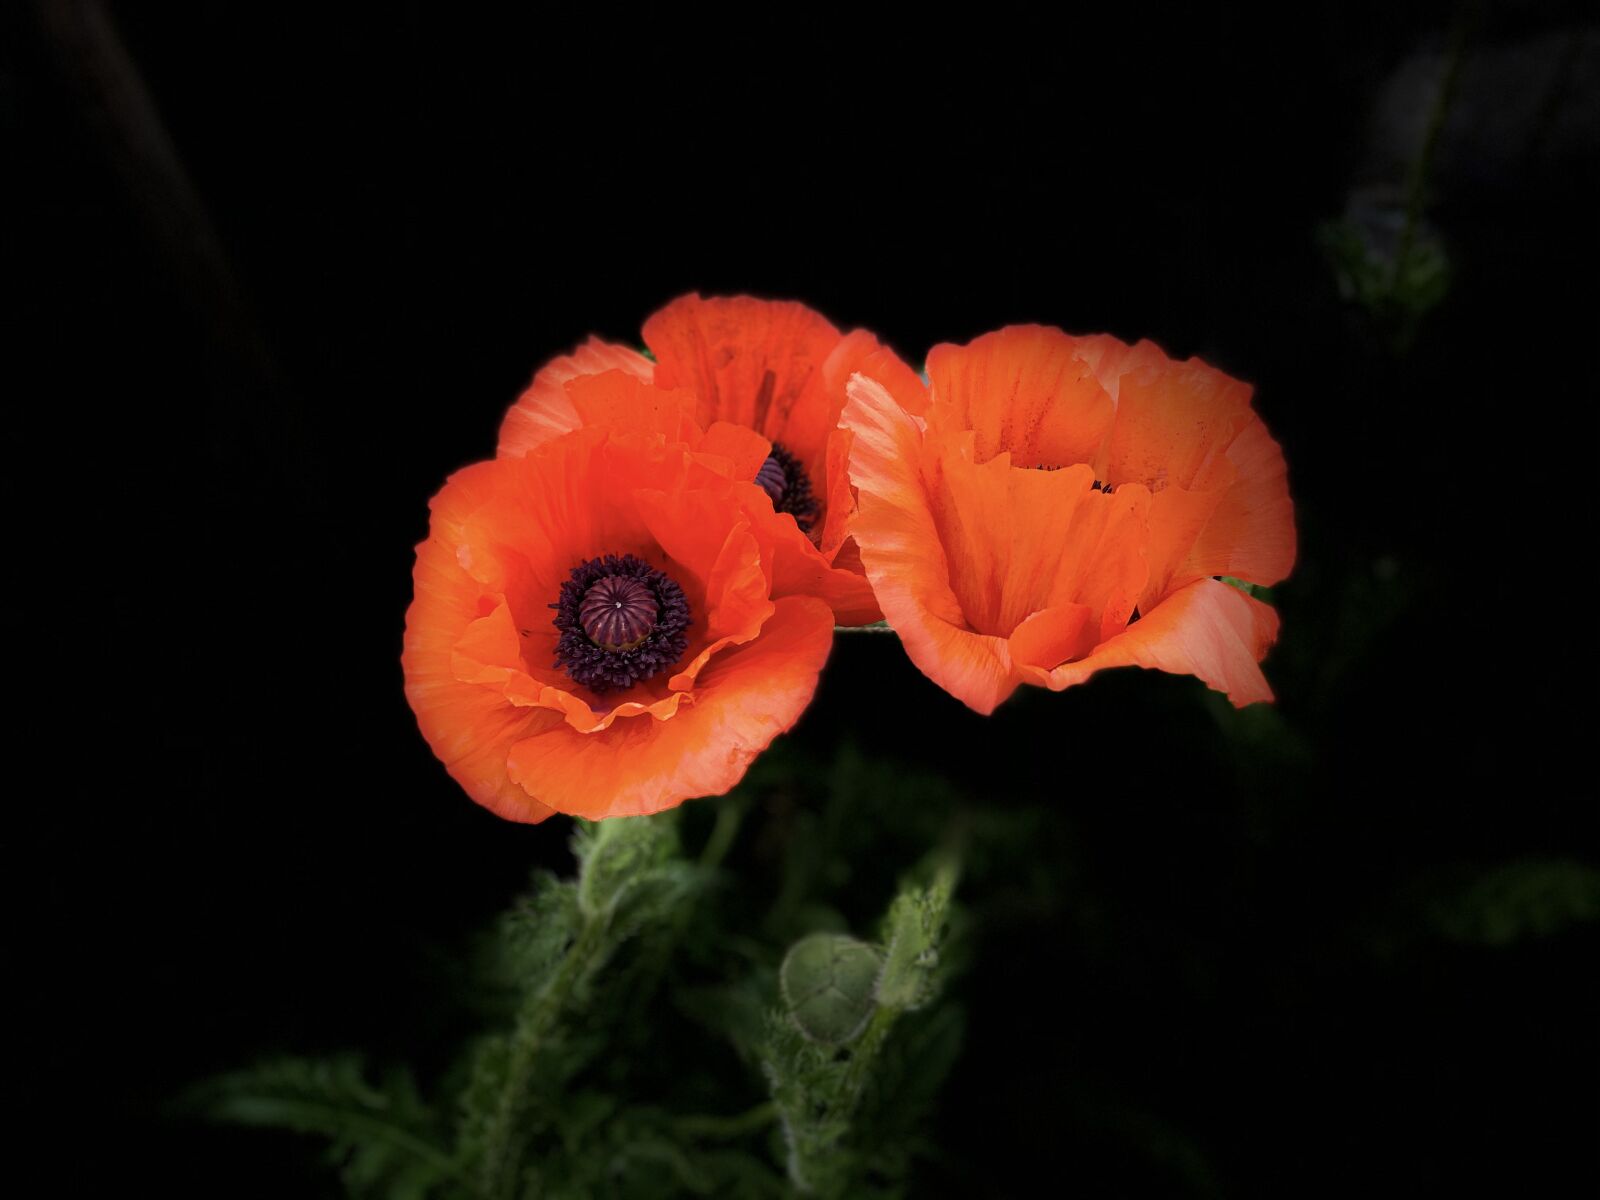 Apple iPhone 11 sample photo. Blume, botanical, decorative photography